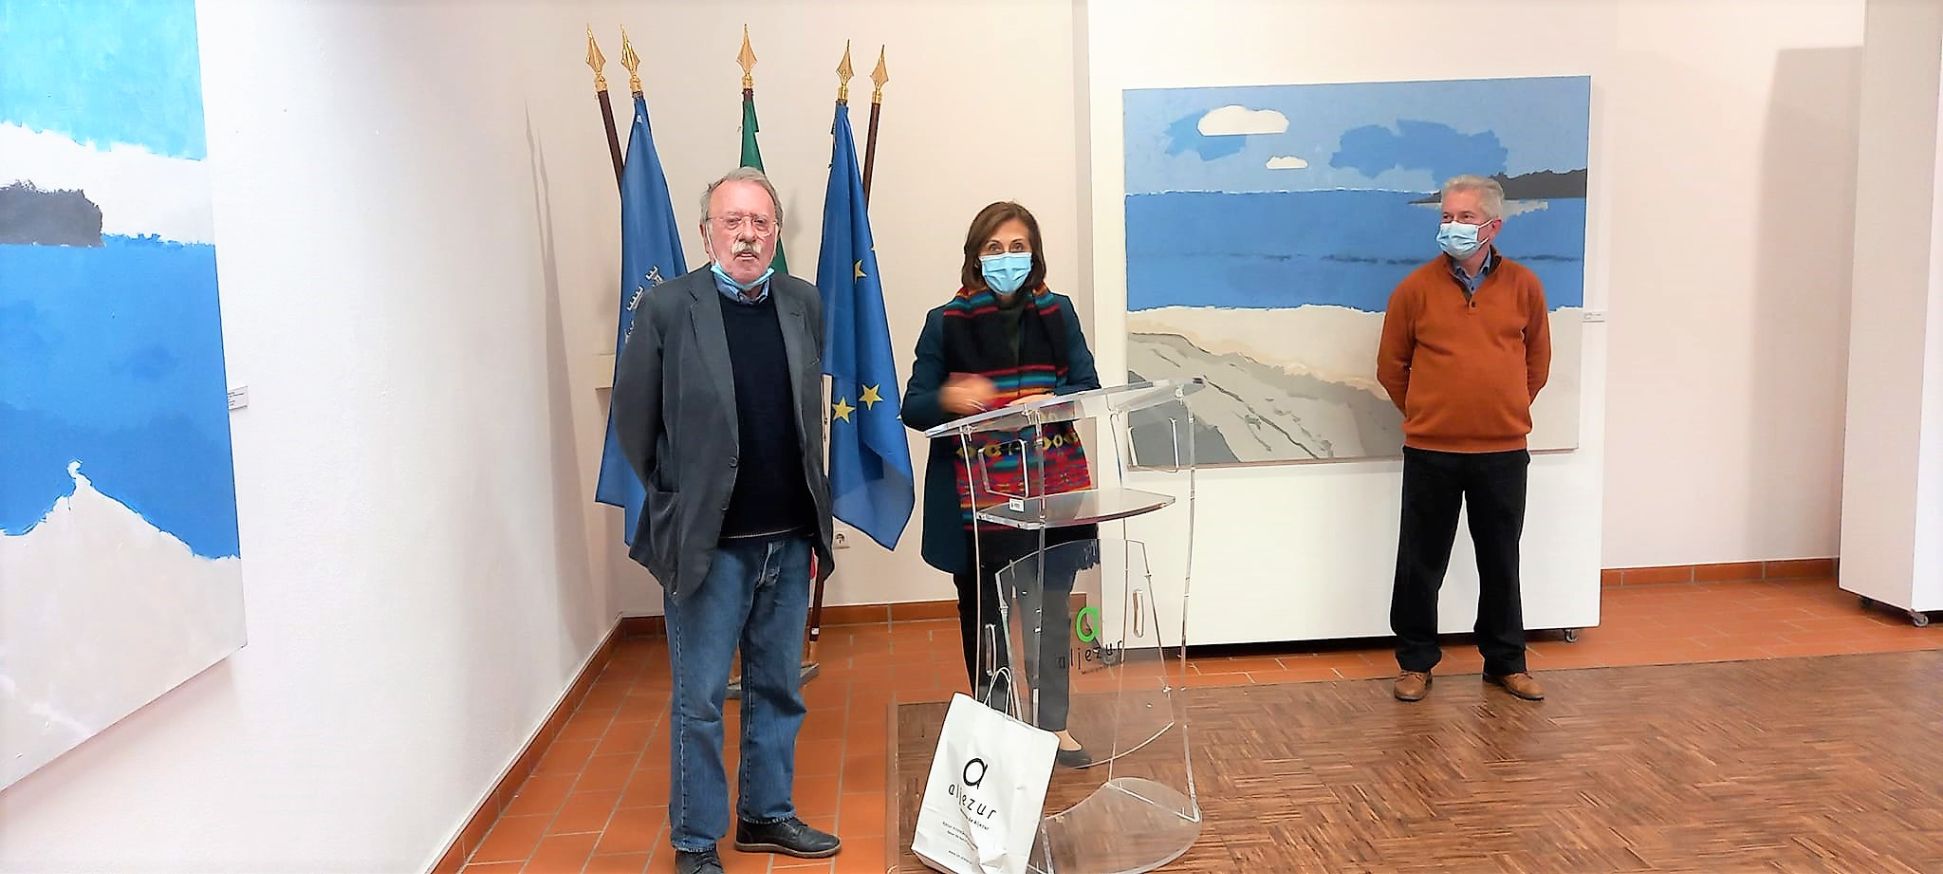 Inaugurada a exposição de Pintura "O Princípio da Paisagem", de Pedro Chorão, no Espaço+ em Aljezur